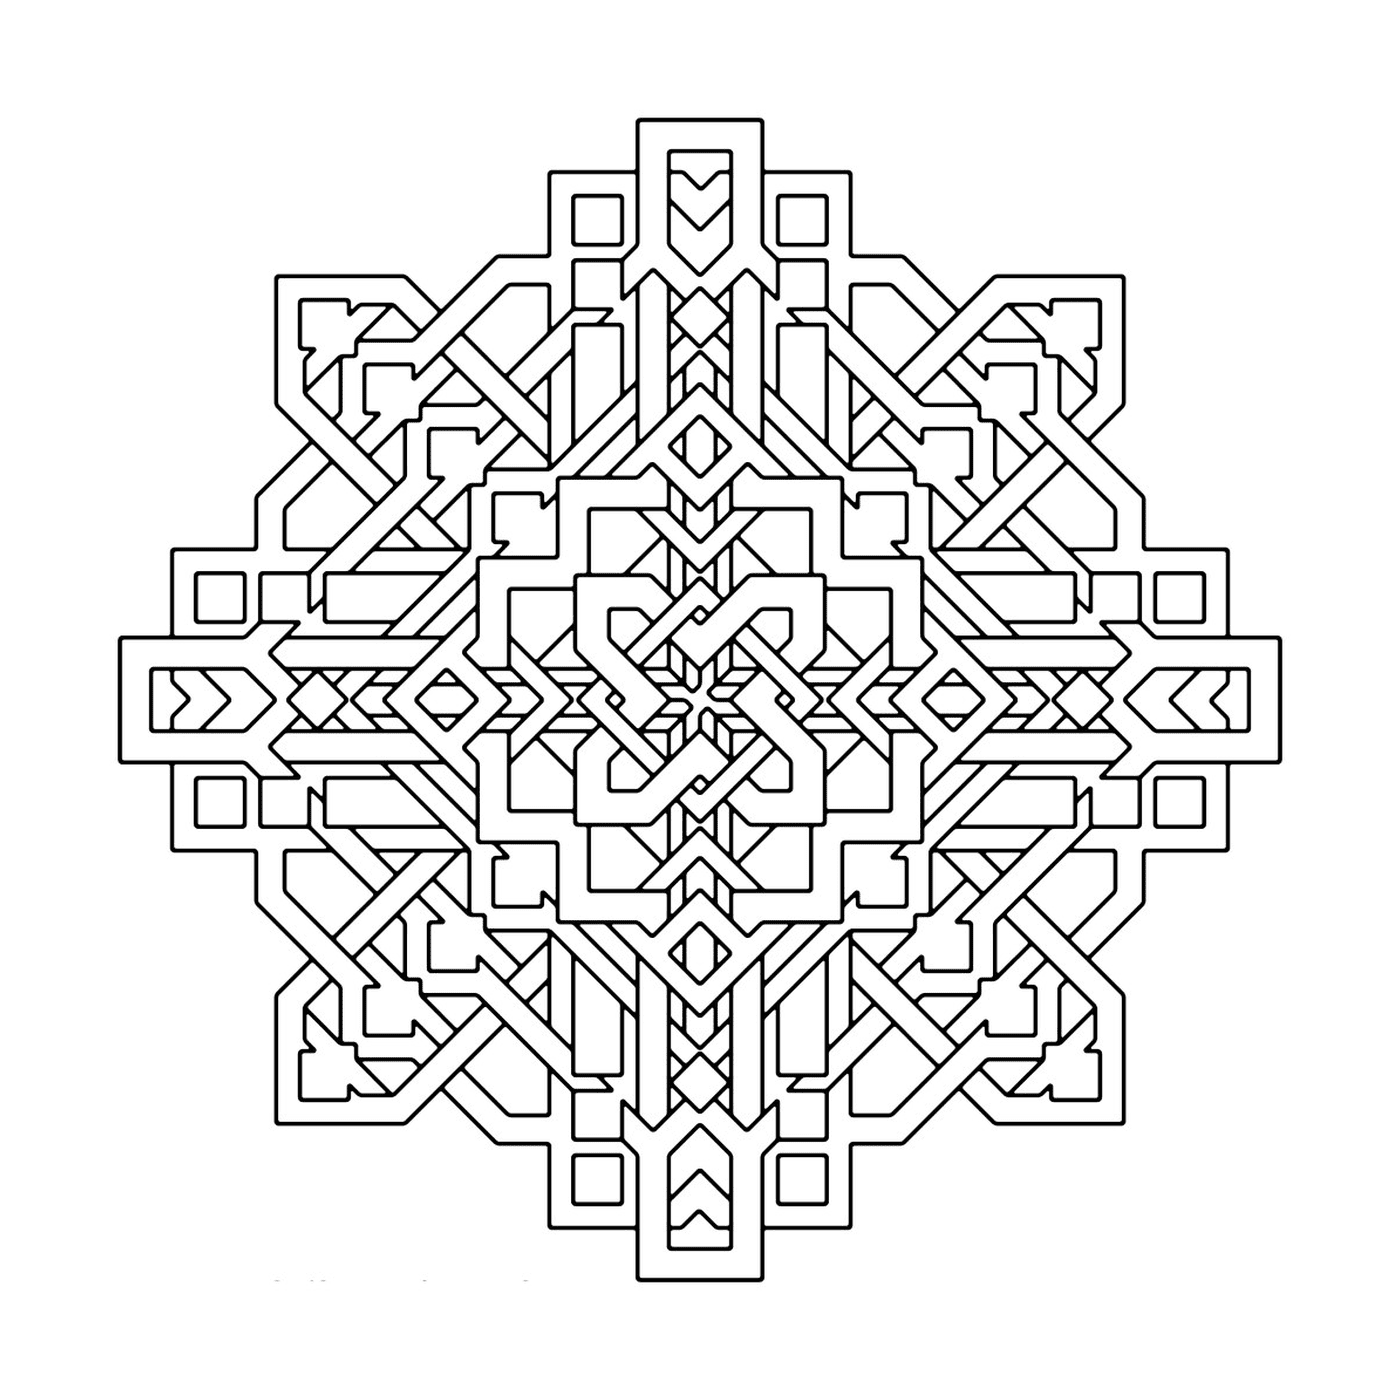  Un patrón geométrico complejo y detallado 